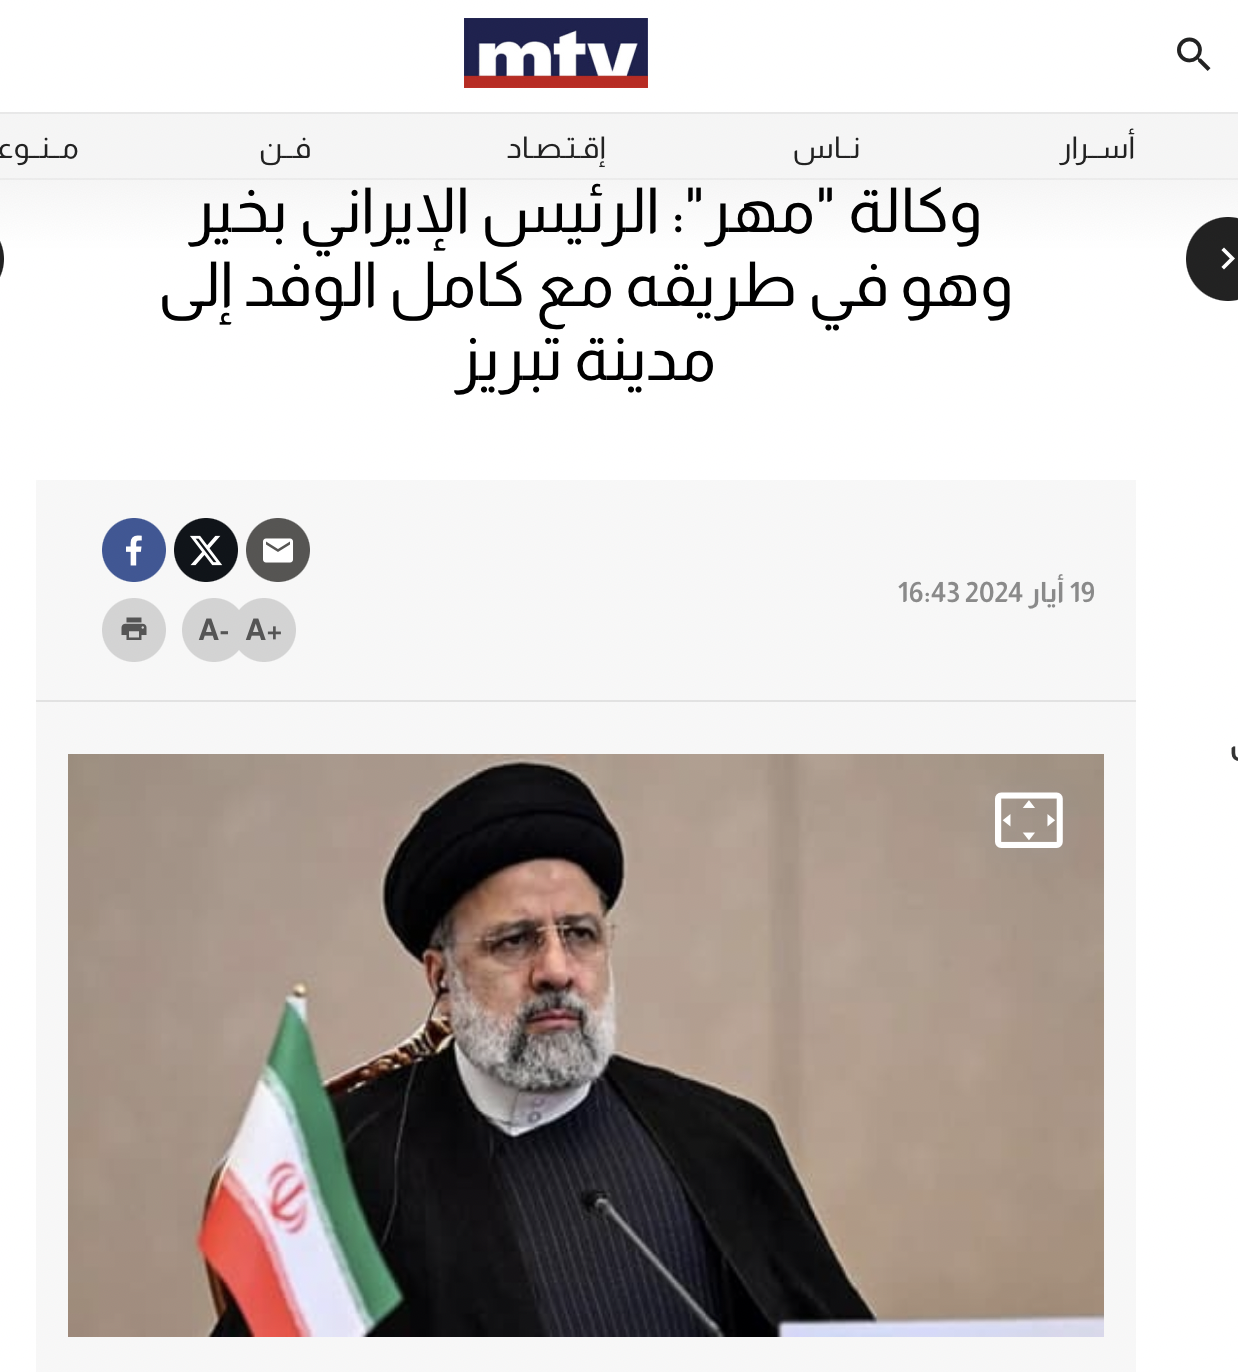 محطة mtv اللبنانية نقلت خبر سلامة الرئيس الإيراني وتوجهه إلى تبريز عن وكالة مهر دون تحقق